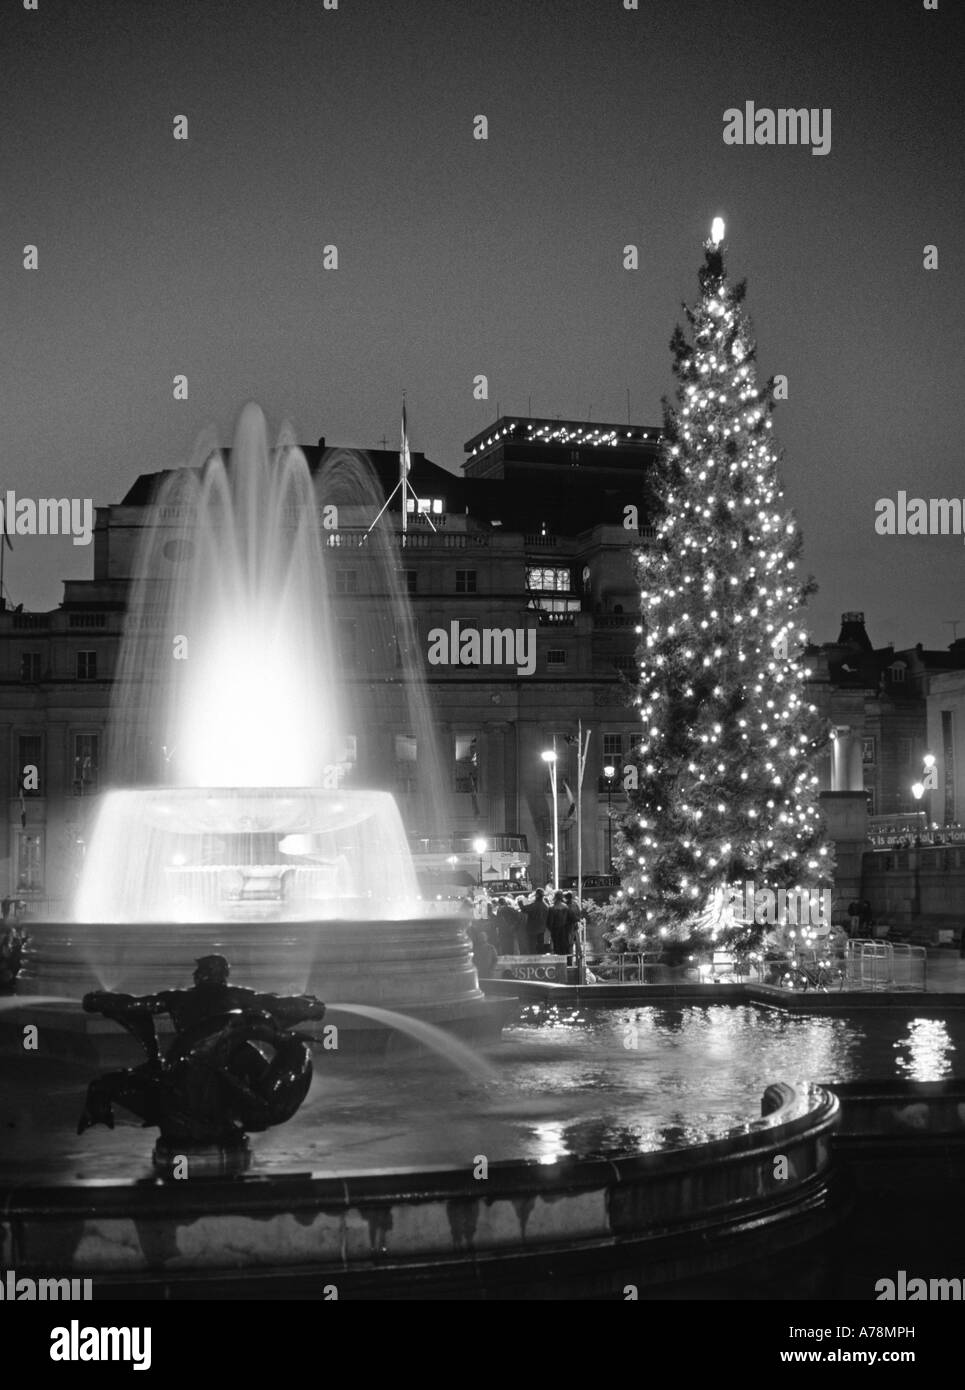 Trafalgar Square célèbre sapin de Noël cadeau de ville d'Oslo et décorations Feux allumés toute la hauteur d'eau fontaine London England UK Banque D'Images